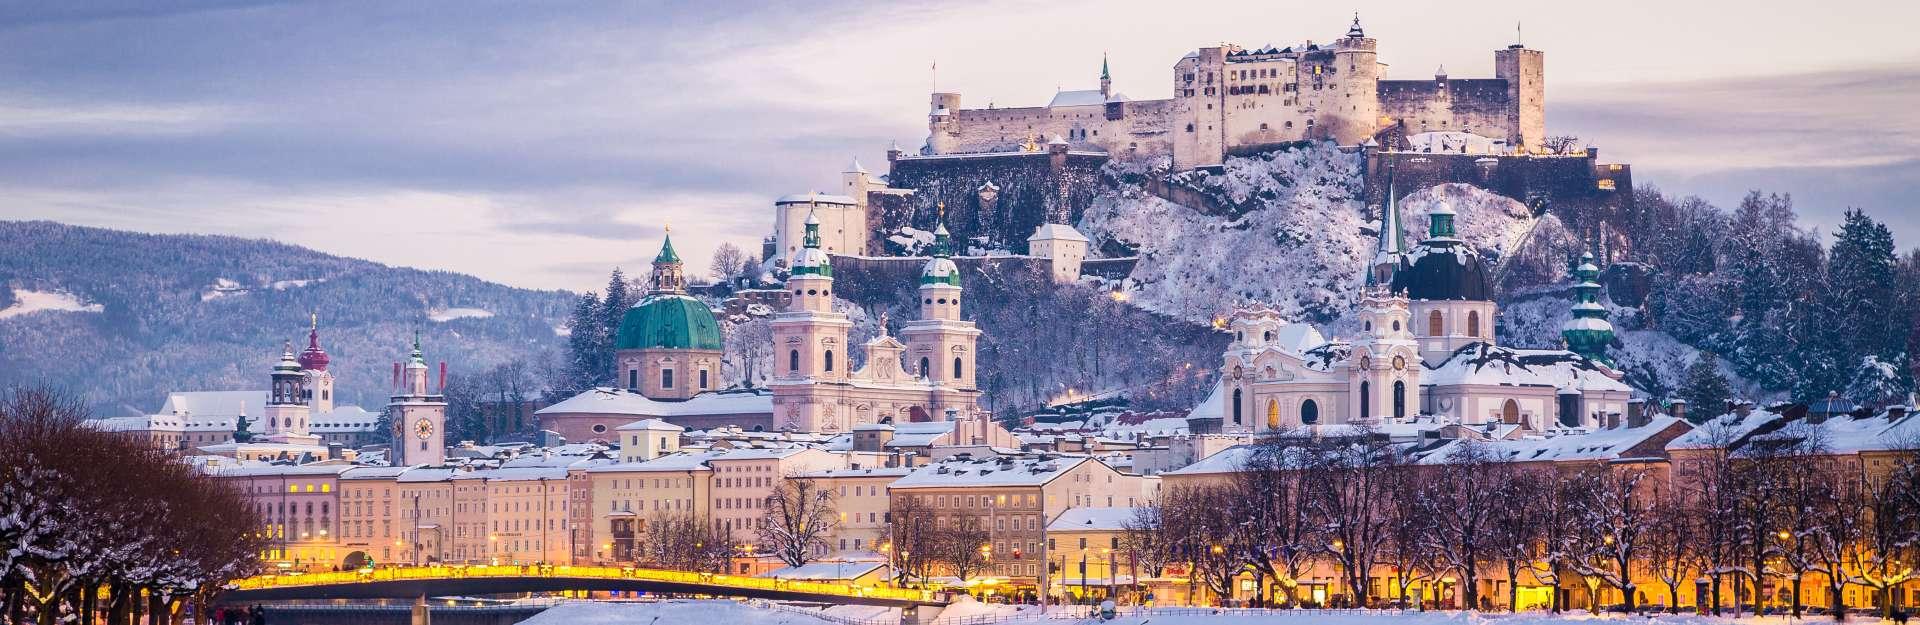 Klassische Ansicht von Salzburg zur Weihnachtszeit im Winter, Österreich